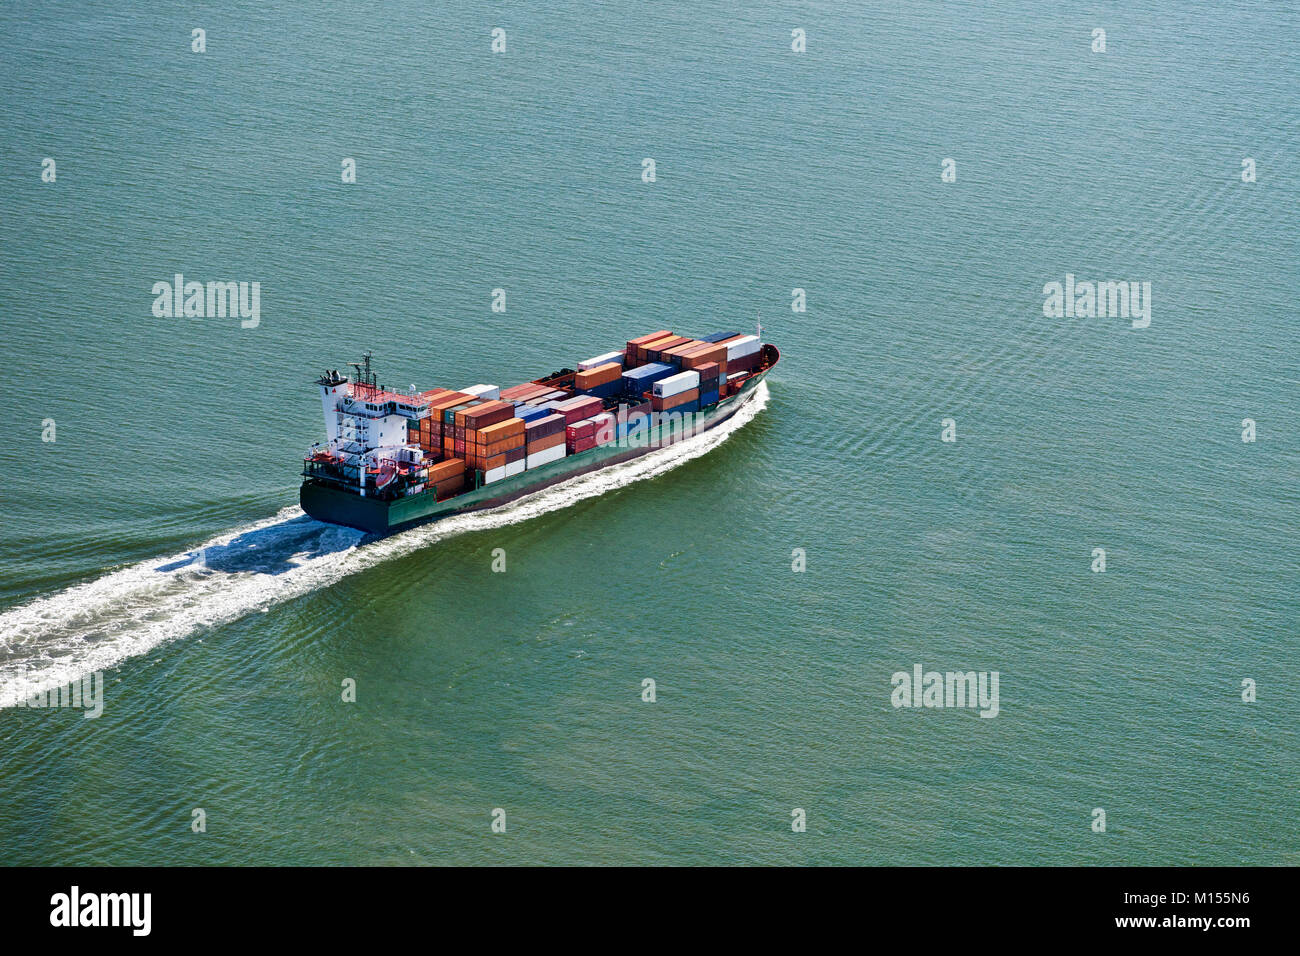 The Netherlands, Nieuw Namen. Container ship in Westerschelde river. Aerial. Stock Photo